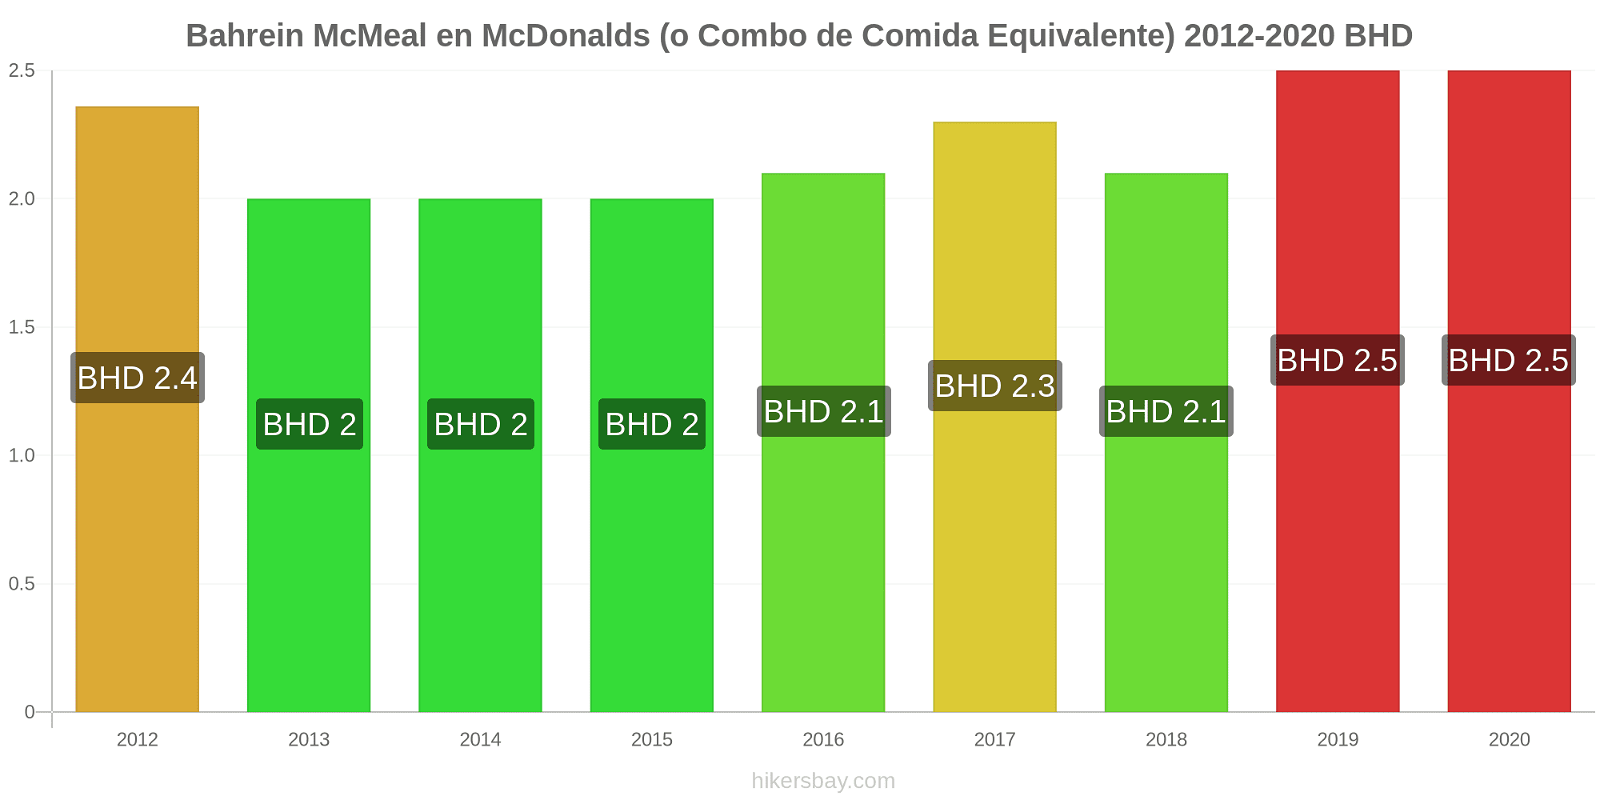 Bahrein cambios de precios McMeal en McDonalds (o menú equivalente) hikersbay.com